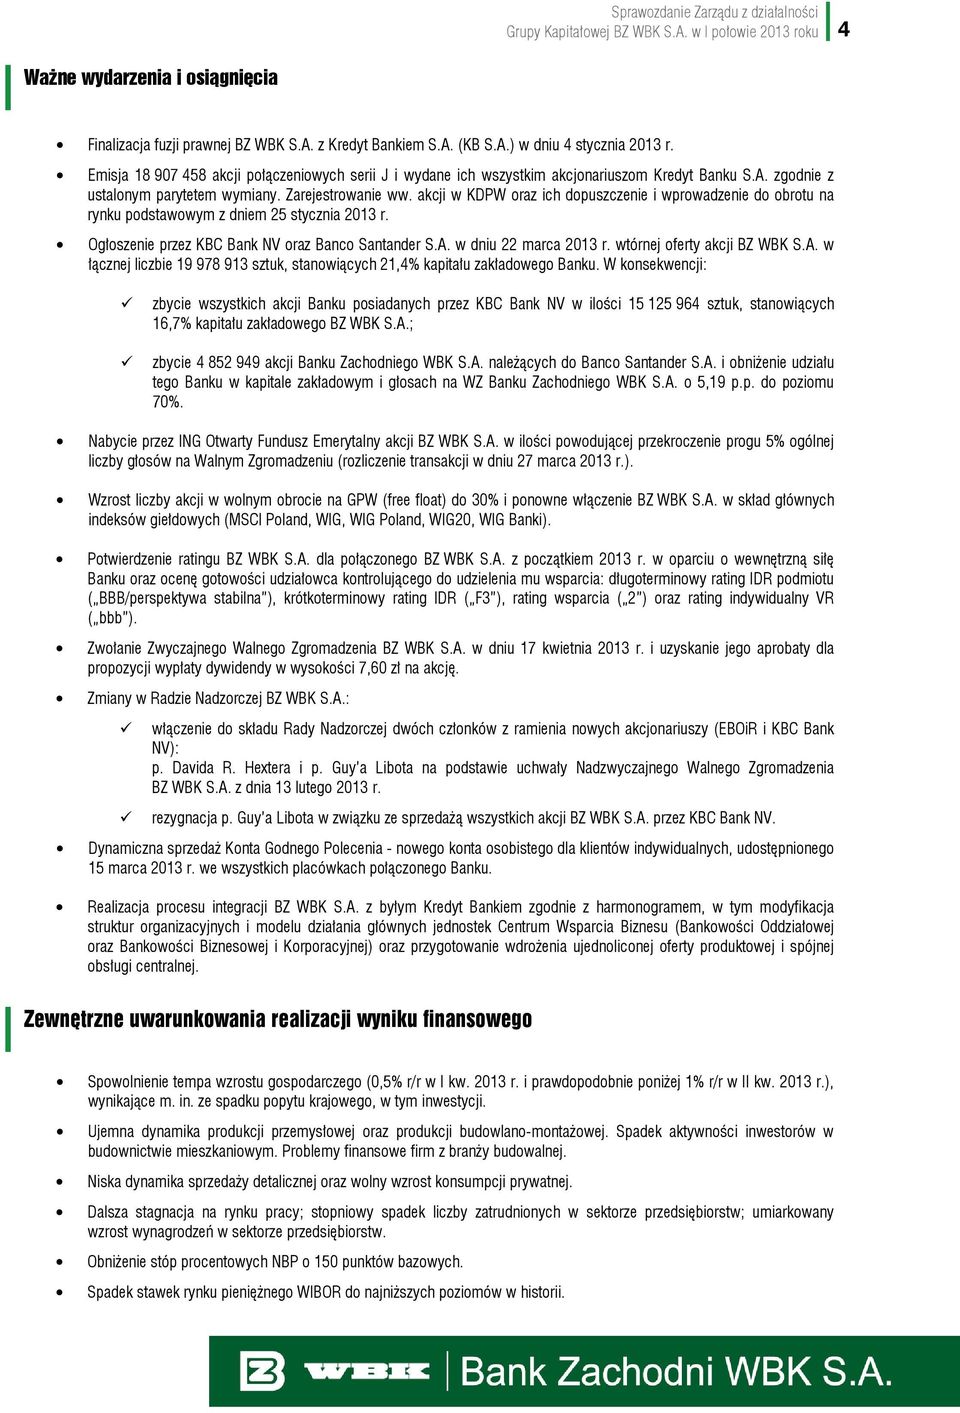 akcji w KDPW oraz ich dopuszczenie i wprowadzenie do obrotu na rynku podstawowym z dniem 25 stycznia 2013 r. Ogłoszenie przez KBC Bank NV oraz Banco Santander S.A. w dniu 22 marca 2013 r.